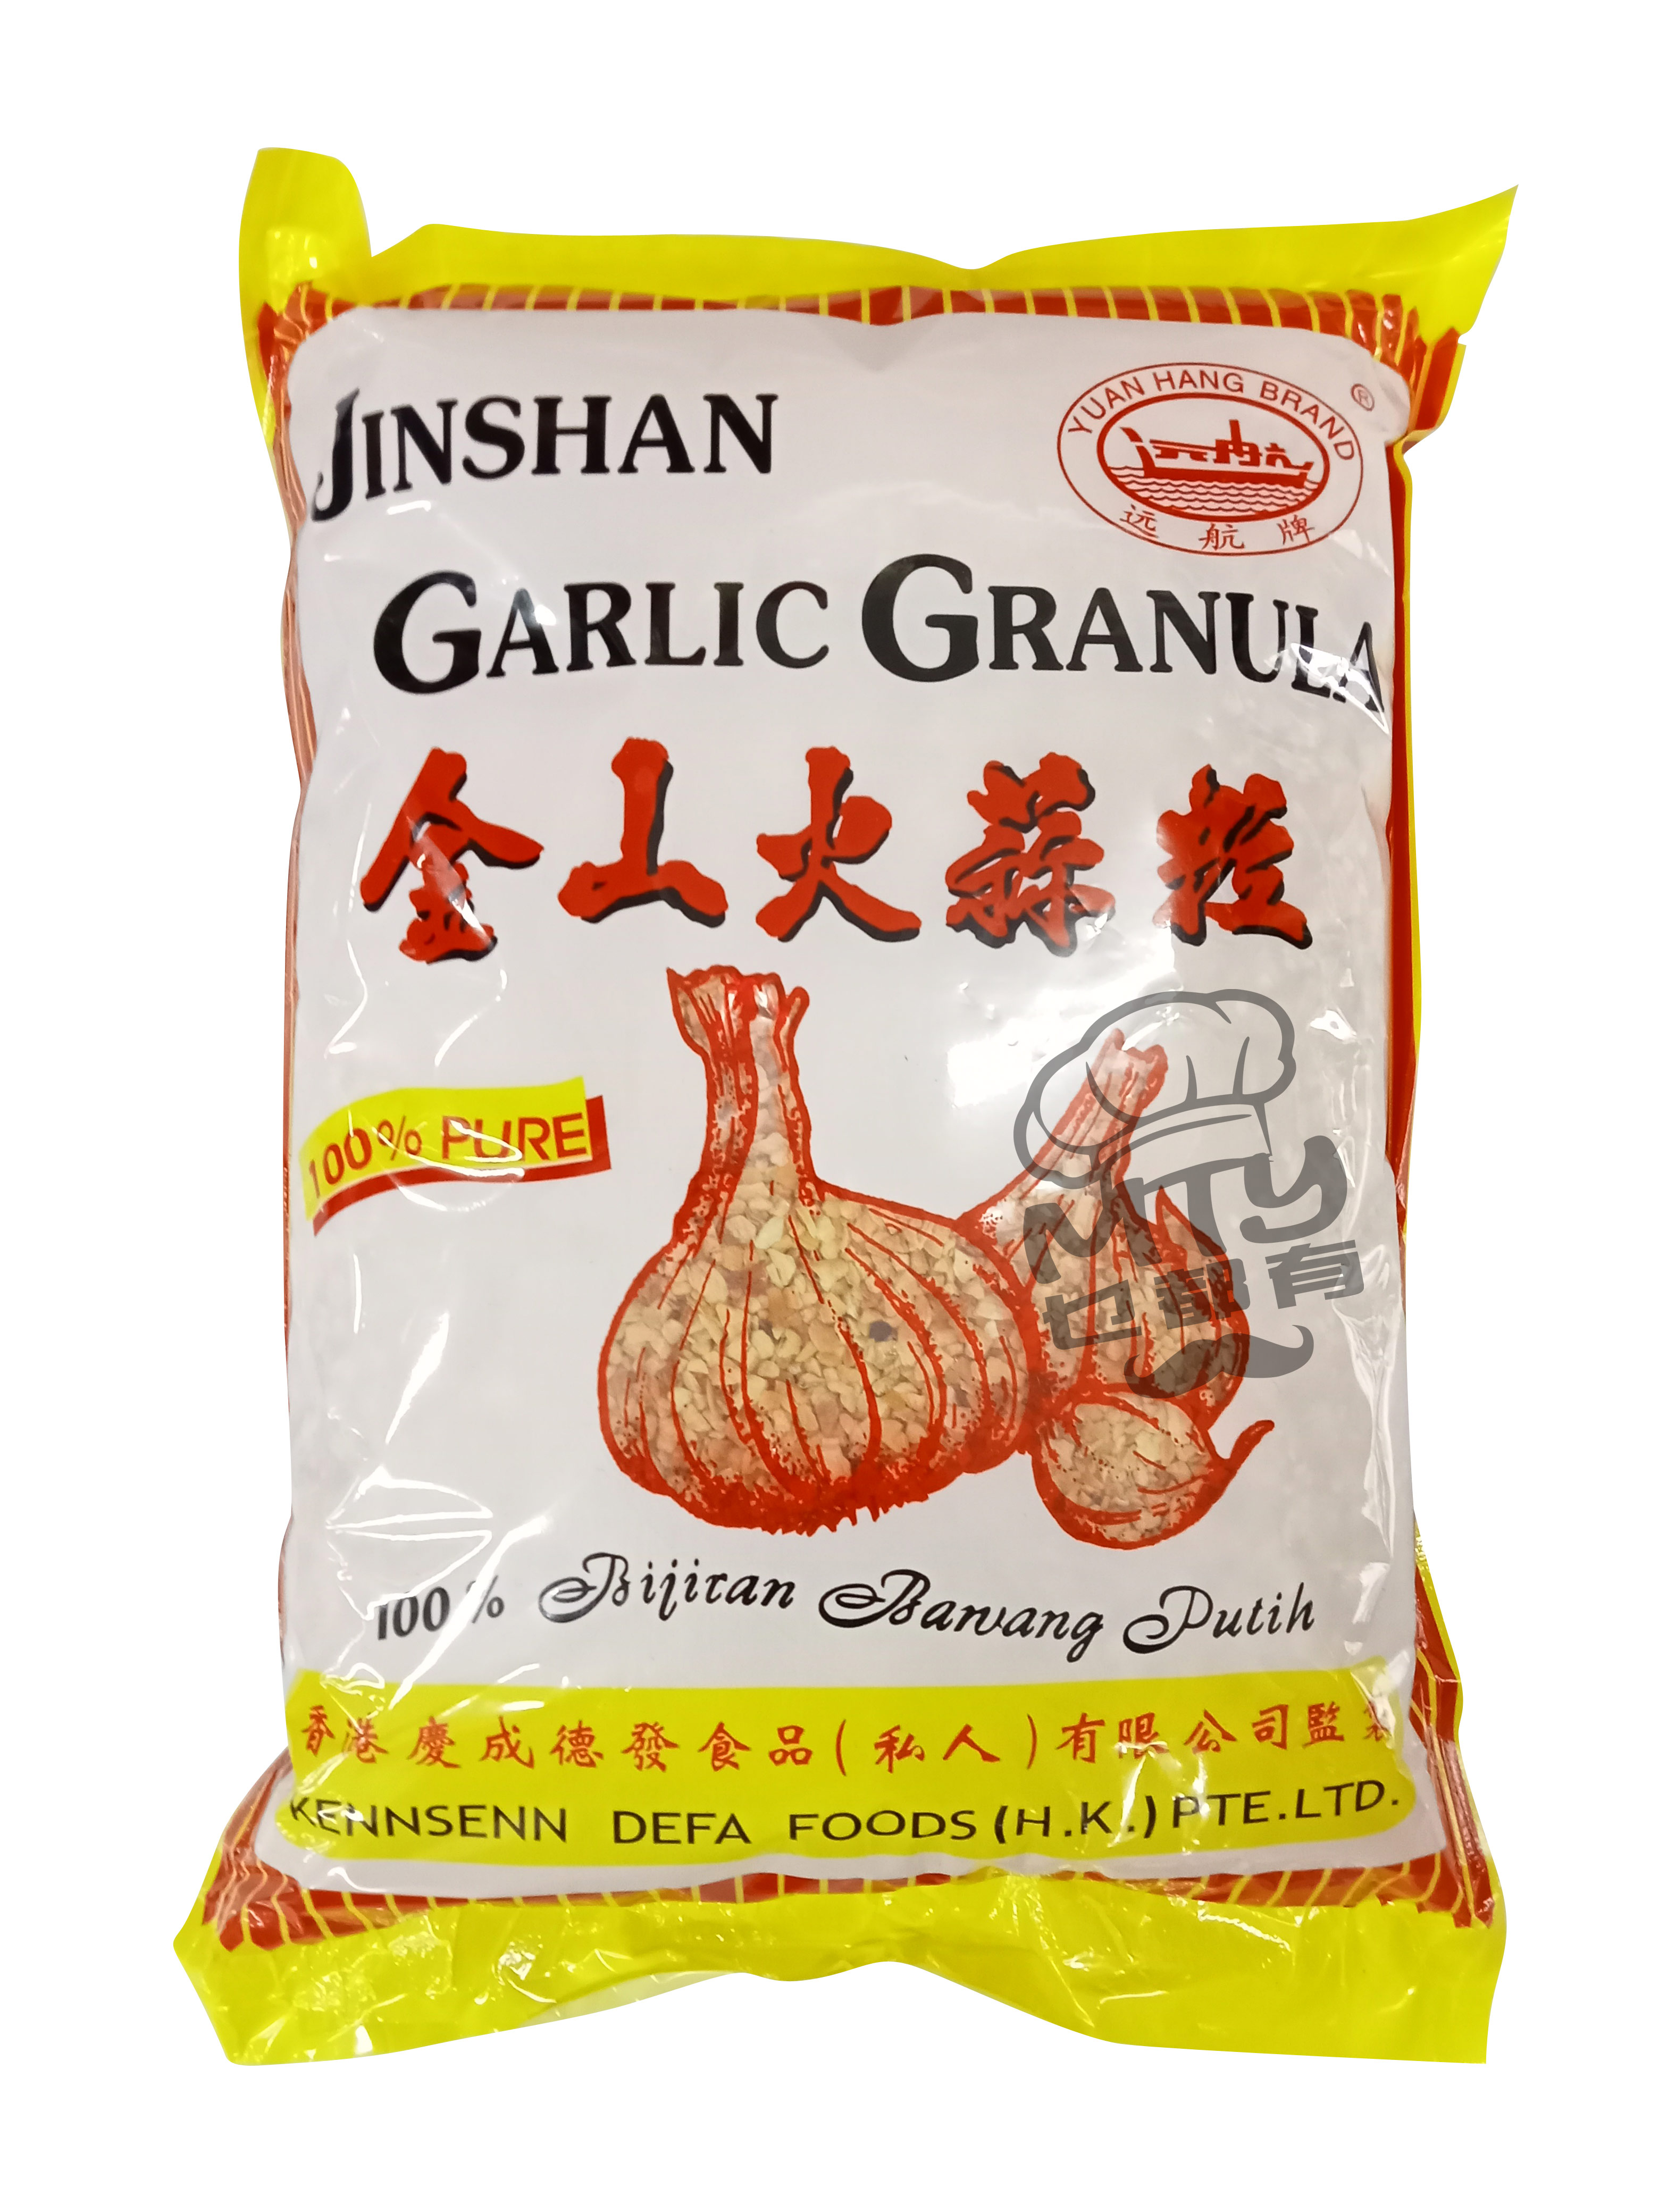 JINSHAN Garlic Granula 1kg